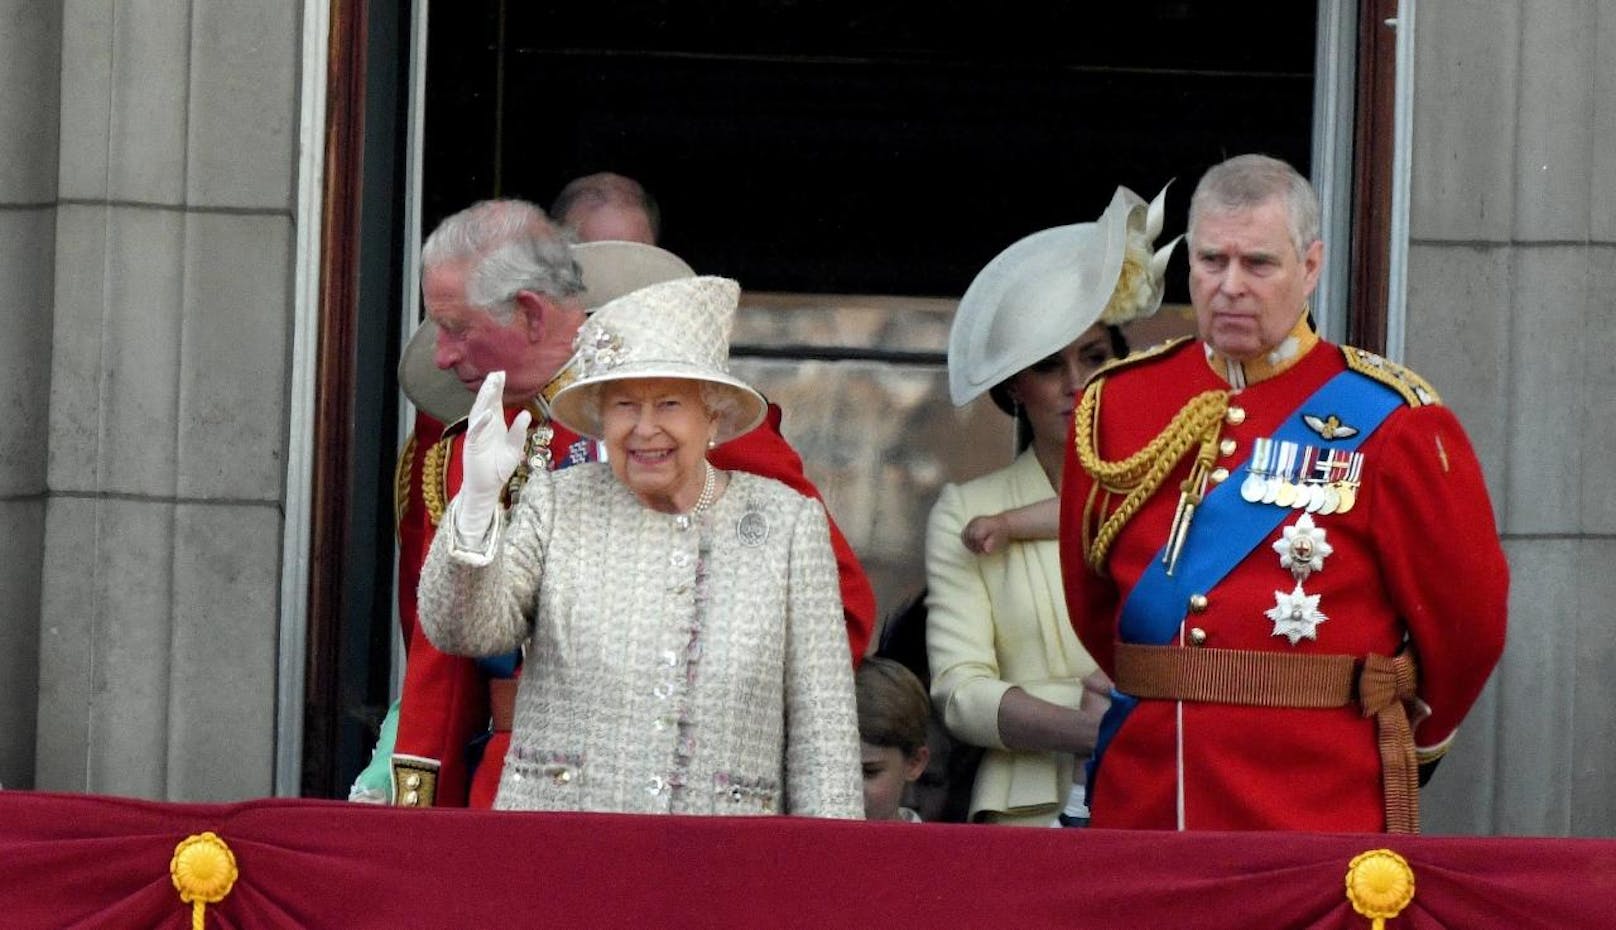 21.11.2019: Prince Andrew, der Sohn der Queen legte am 20. nach einem desaströsen Interview alle seine Ämter zurück. Am 21. kommt heraus: Seine Mama, die Queen hat ihn persönlich gefeuert. Sowas gab's noch nie. <a href="https://www.heute.at/s/prinz-andrew-queen-roylas-kundigung-rauswurf-48313950">Alle Infos HIER</a>